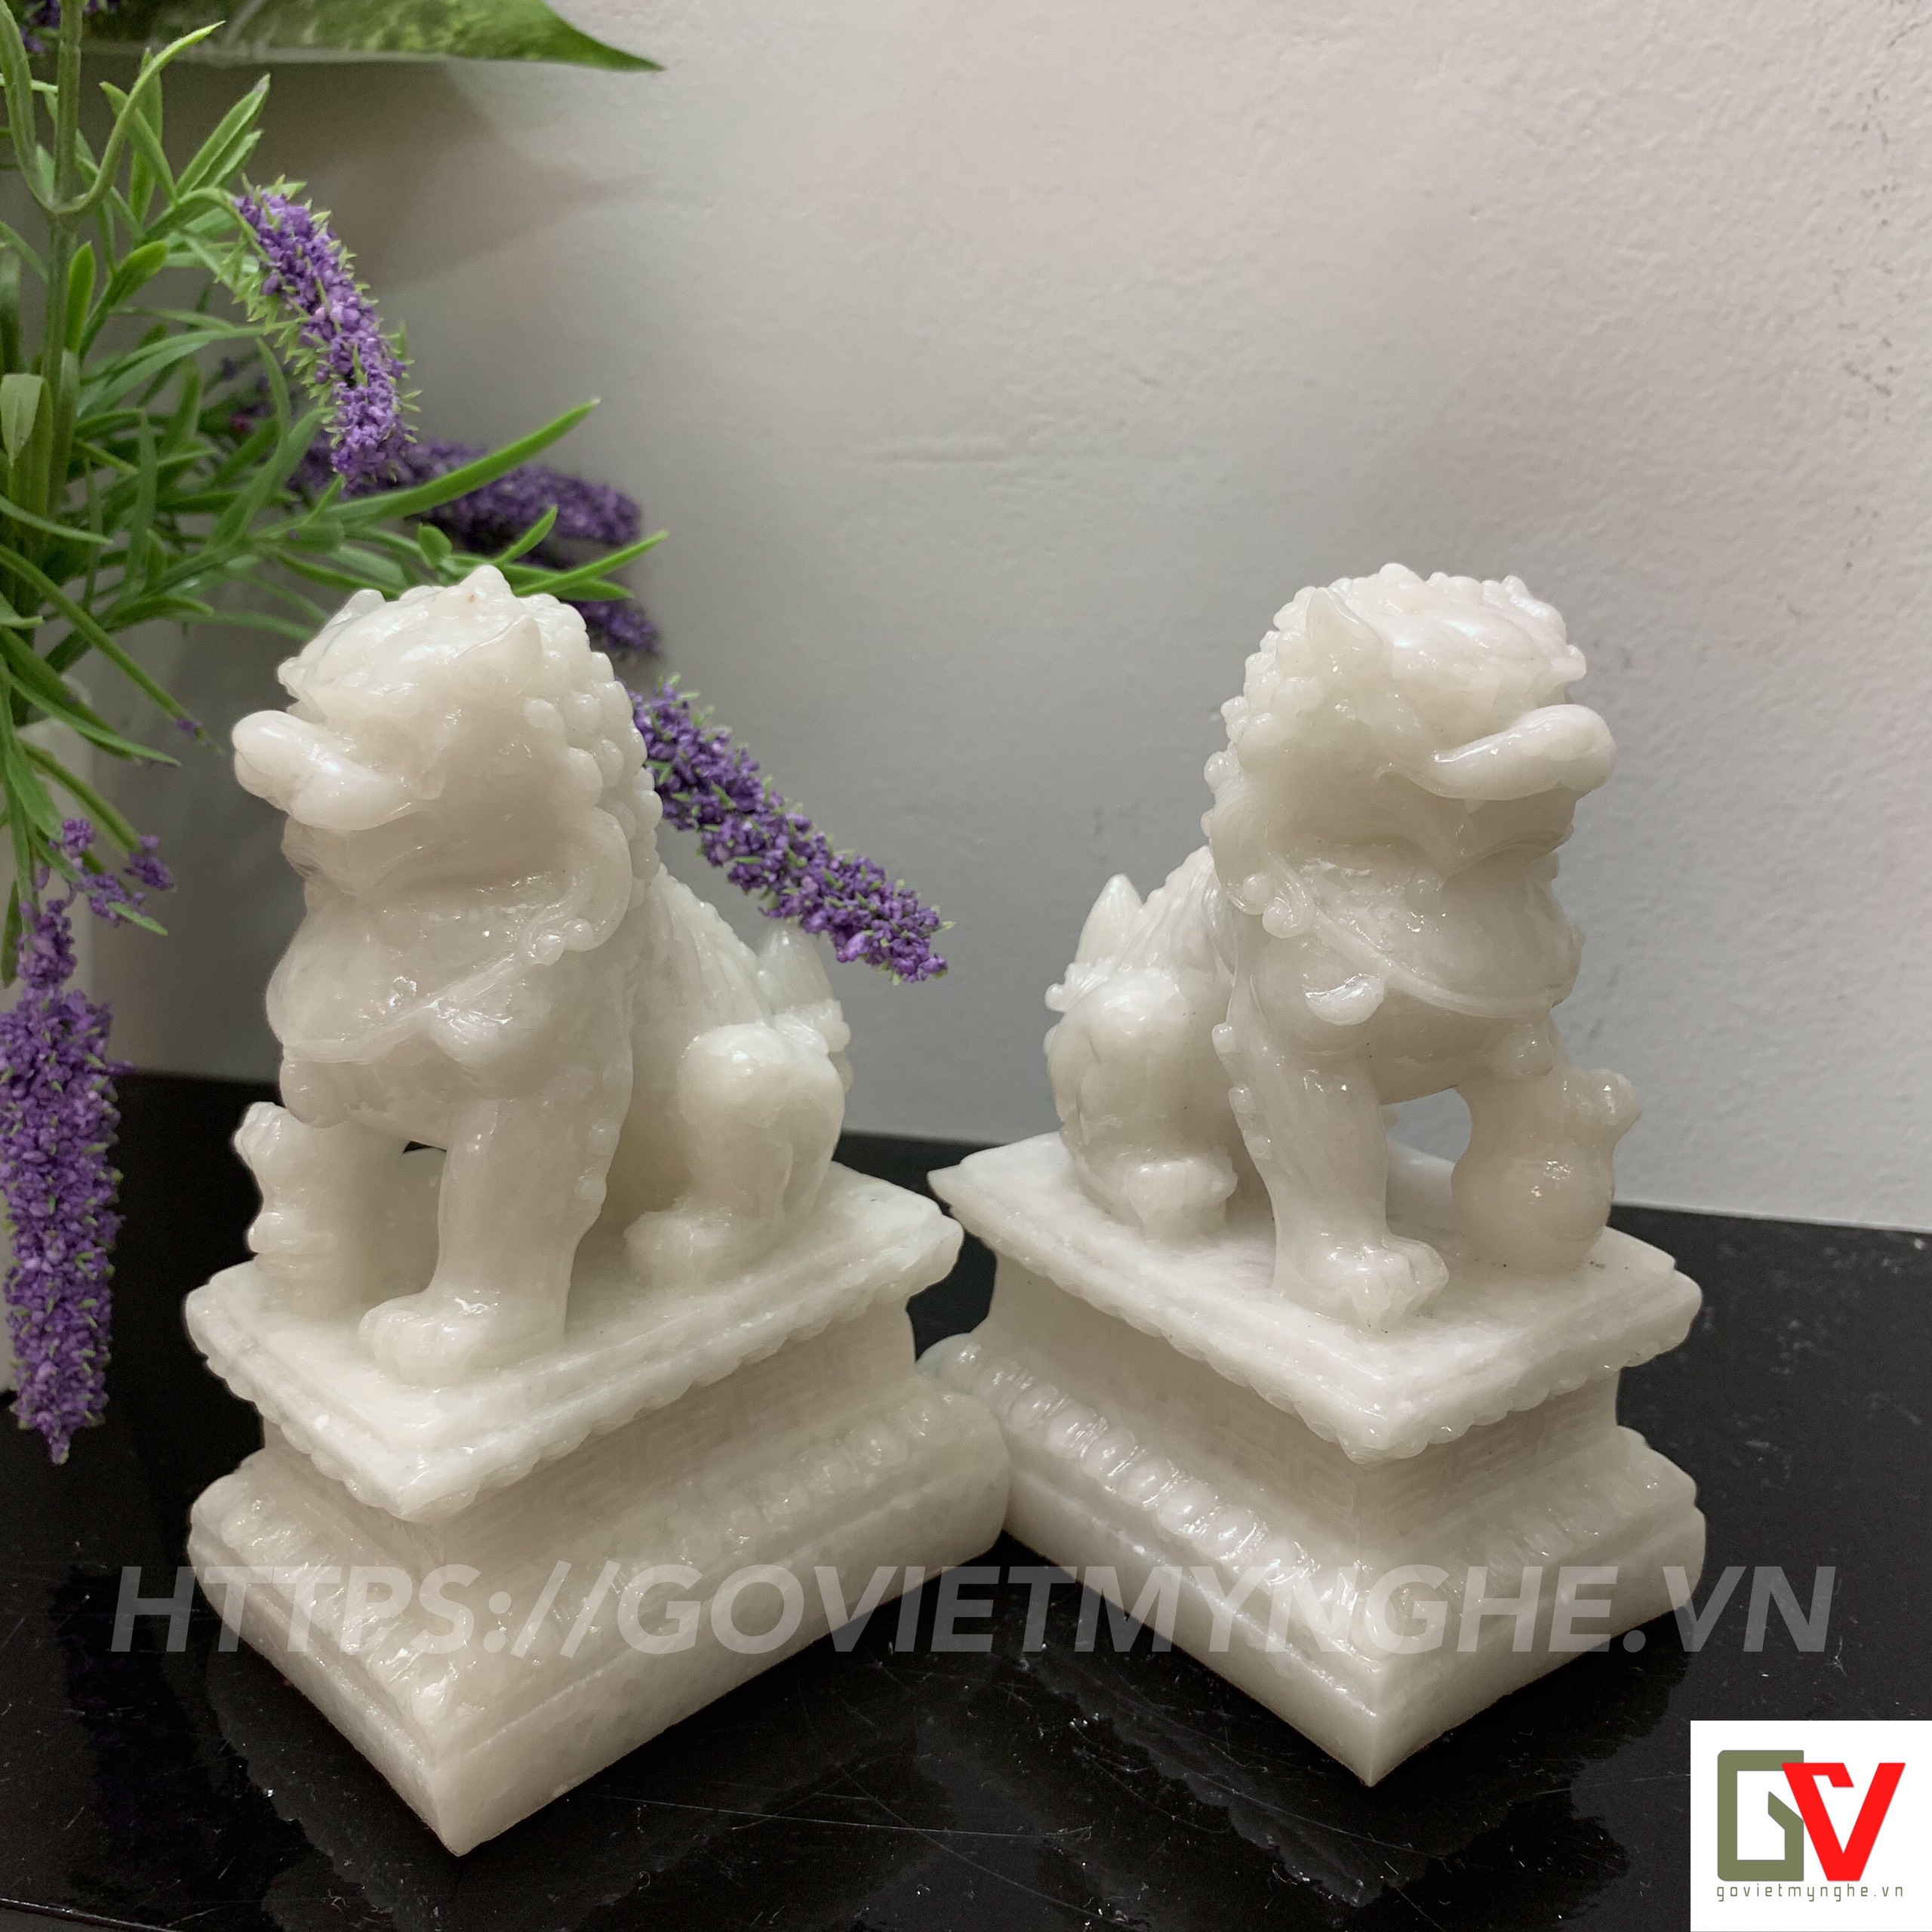 Cặp 2 tượng kỳ lân trang trí phong thủy - Cao 12cm - Màu trắng đá non nước